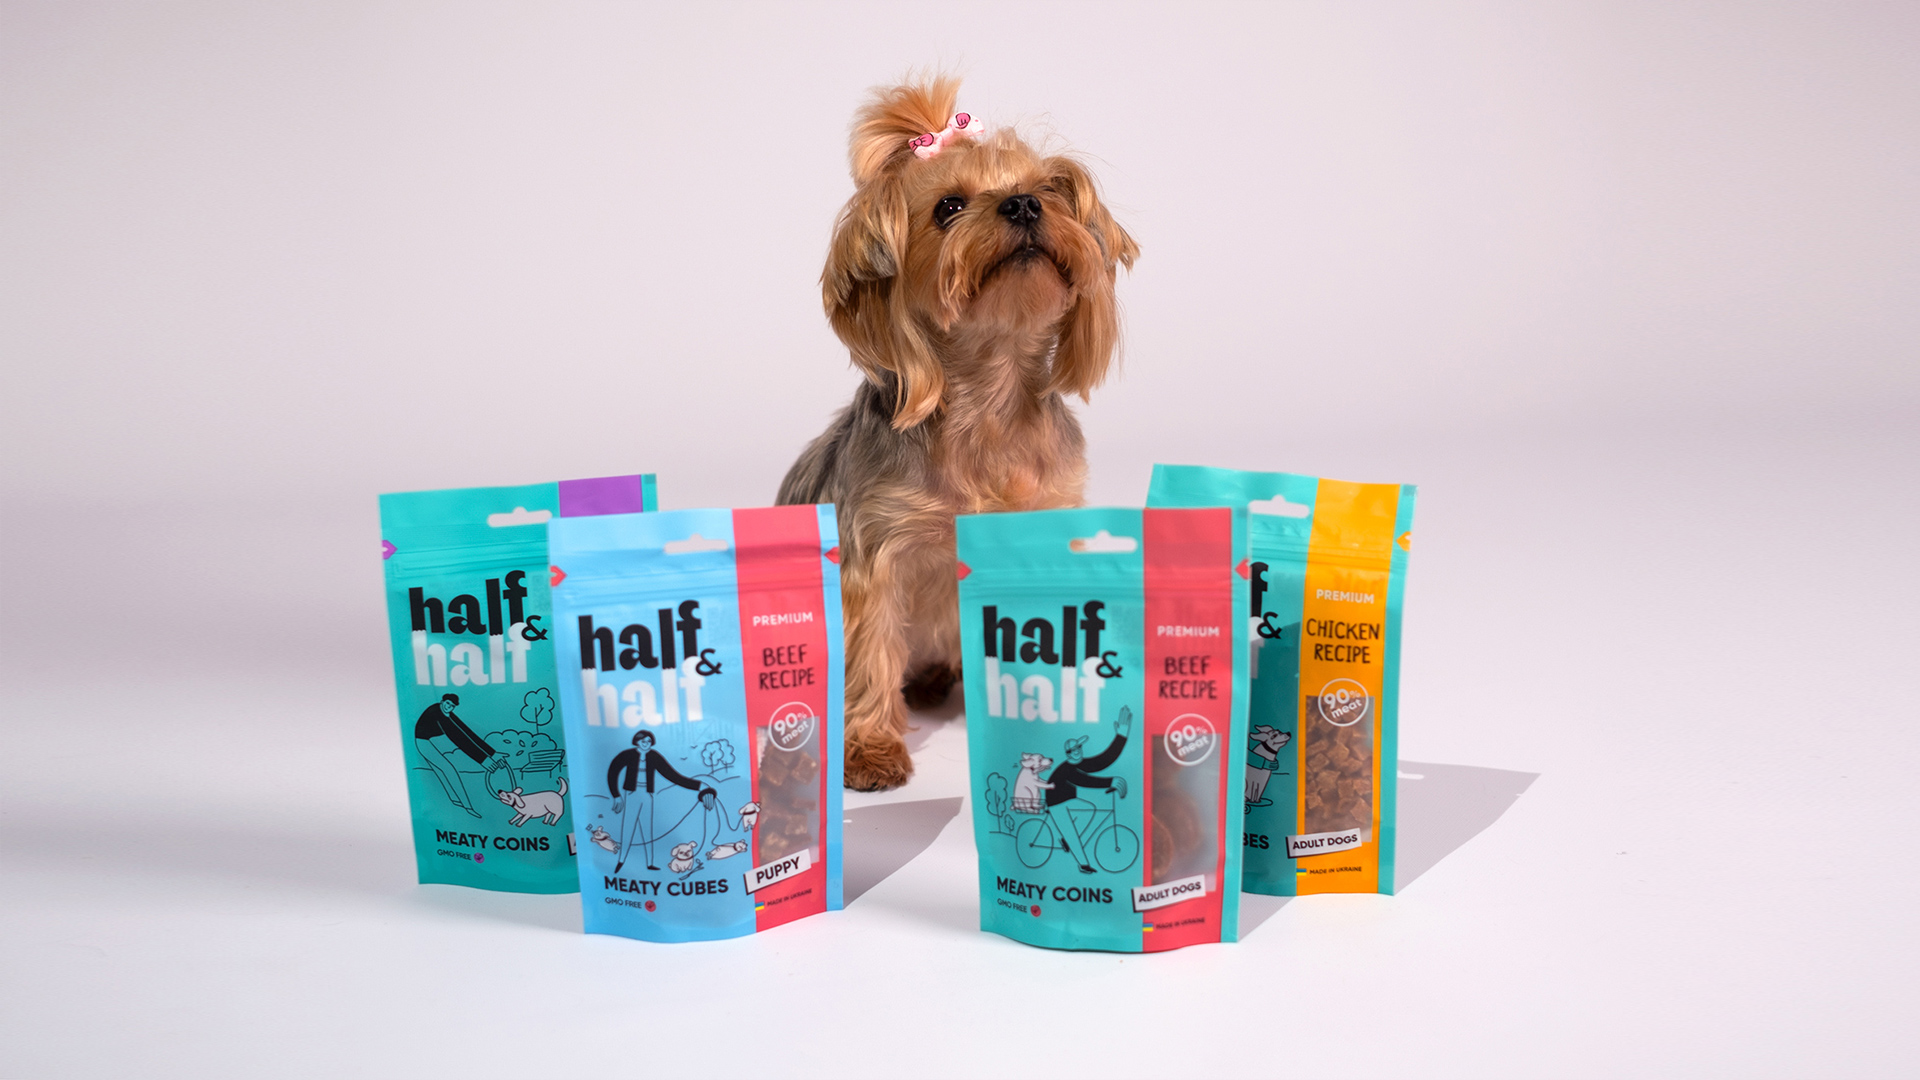 Half&Half: Dozen створили позиціонування, неймінг, слоган і паковання для бренду кормів для тварин